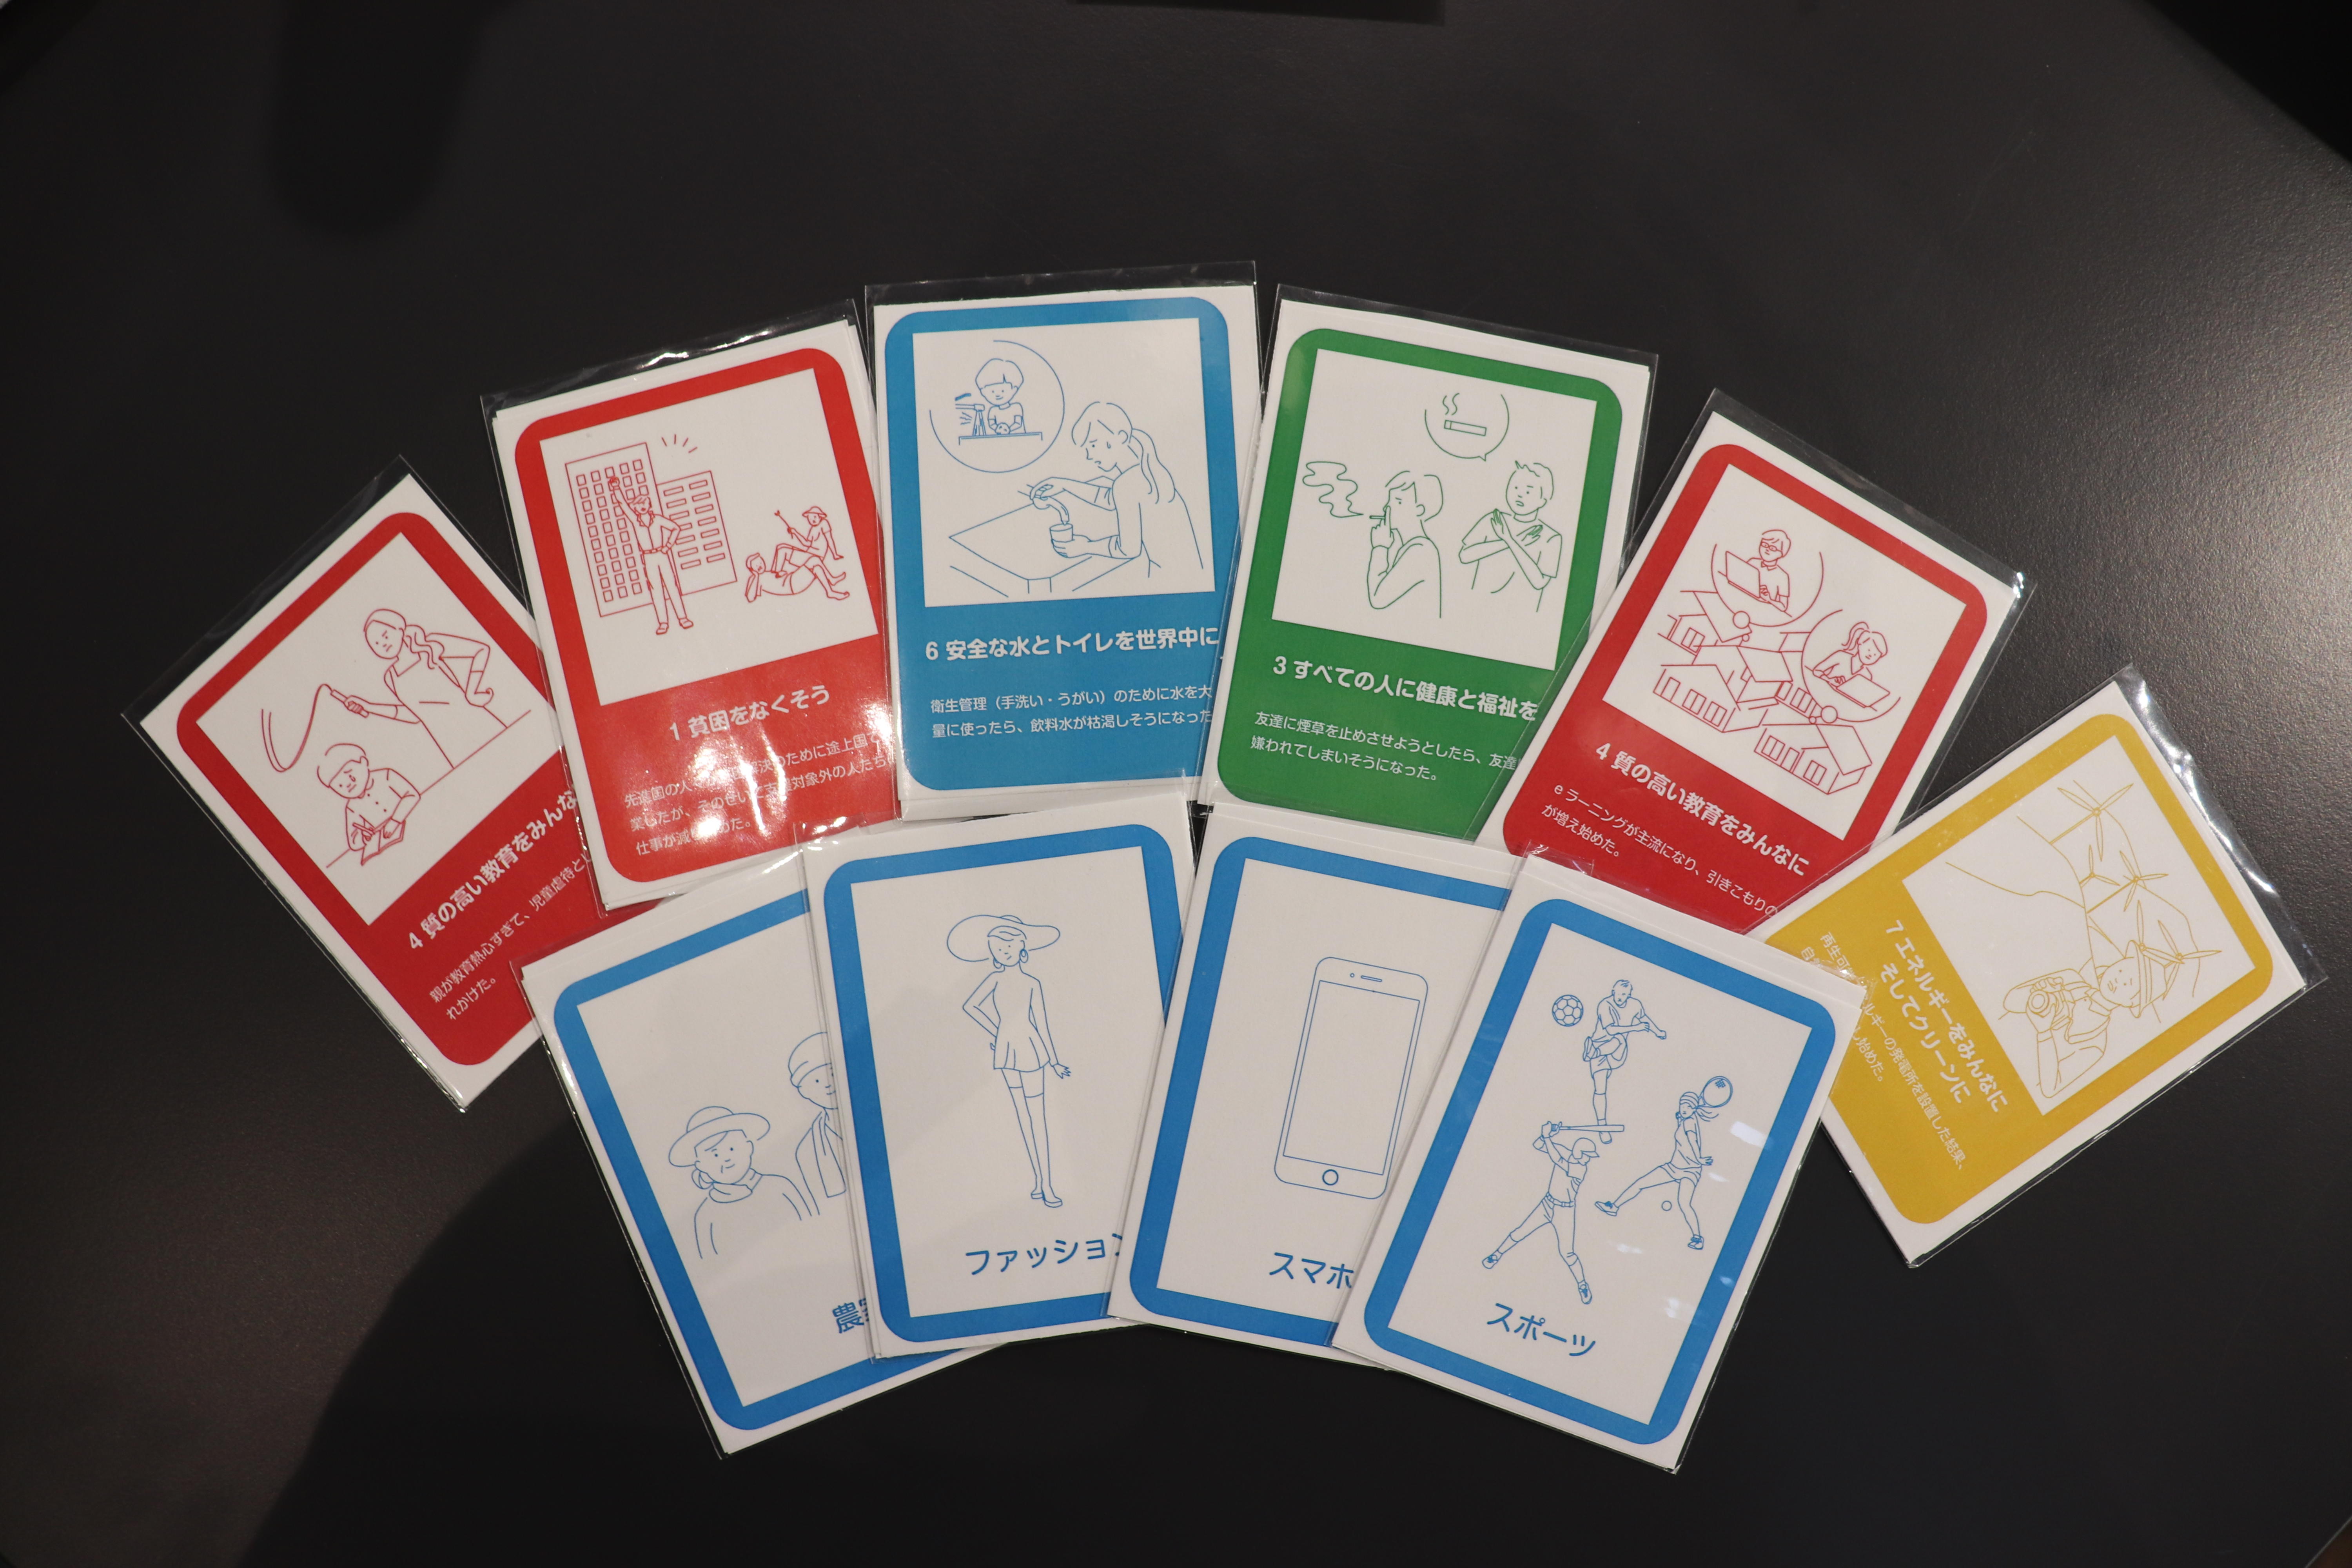 神田外語大学においてSDGsへの理解を深めるための講演会、パネルディスカッションとカードゲーム体験ワークショップを開催します